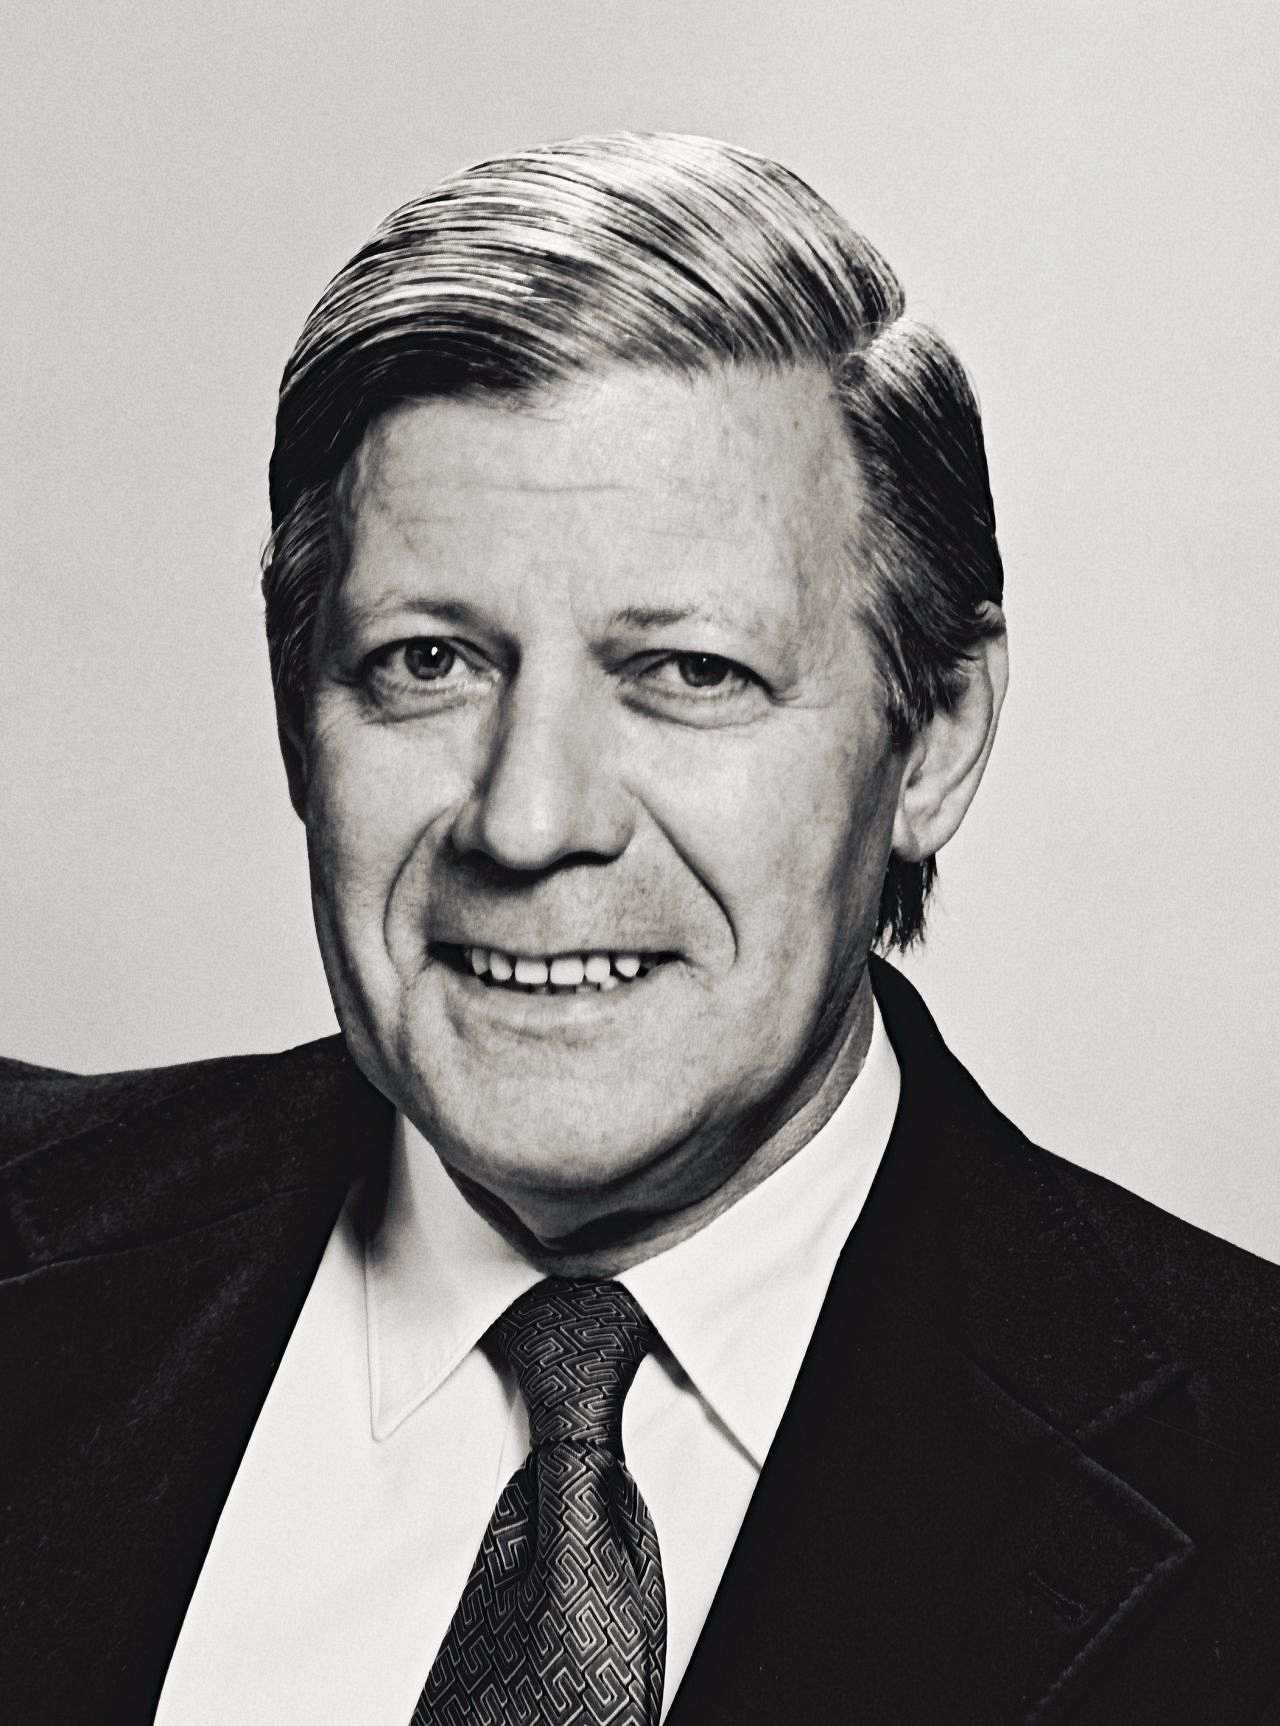 Offizielles Porträt von Bundeskanzler Helmut Schmidt, Bonn 1977